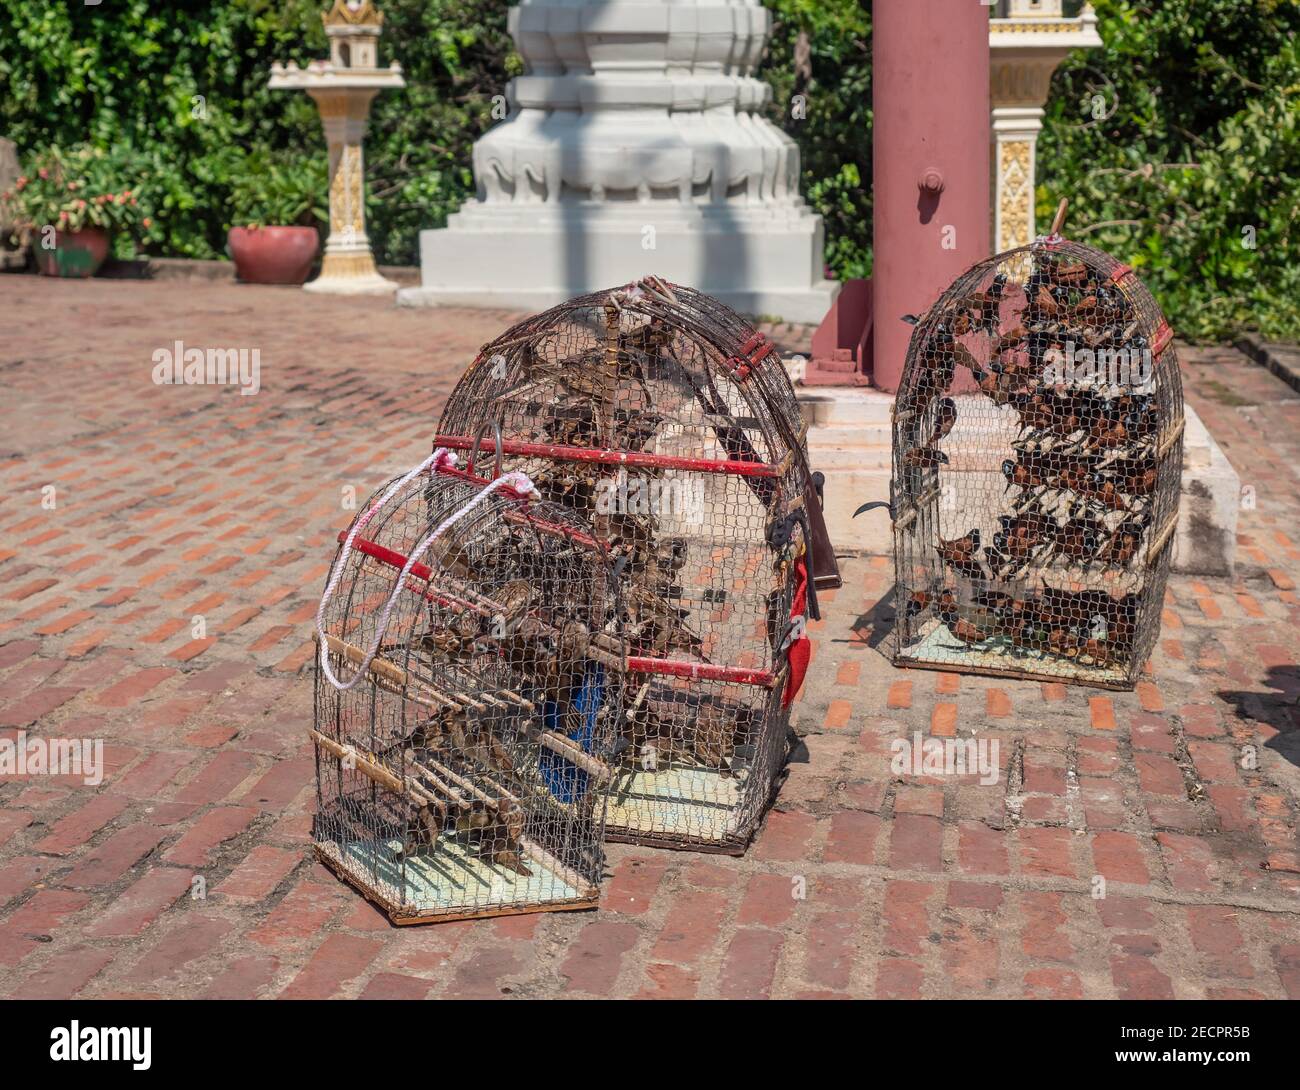 Vögel in Käfigen im Wat Phnom in Phnom Penh, Kambodscha. Besucher des Tempels können eine Gebühr bezahlen, um einen der Vögel freizulassen. Es wird als eine Art der Herstellung betrachtet Stockfoto